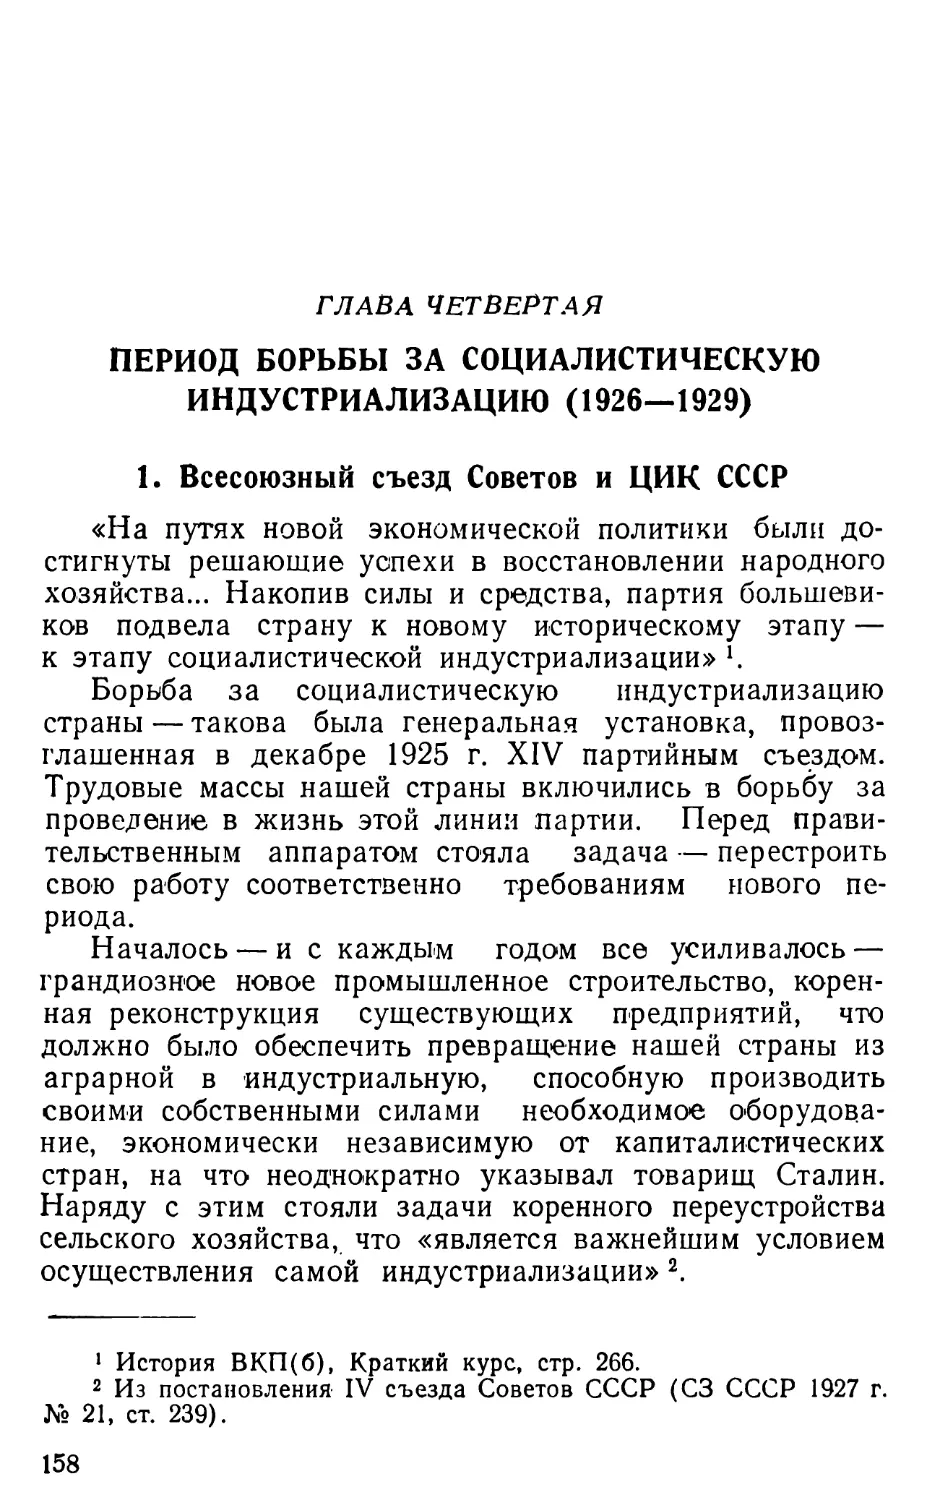 1. Всесоюзный съезд Советов и ЦИК СССР